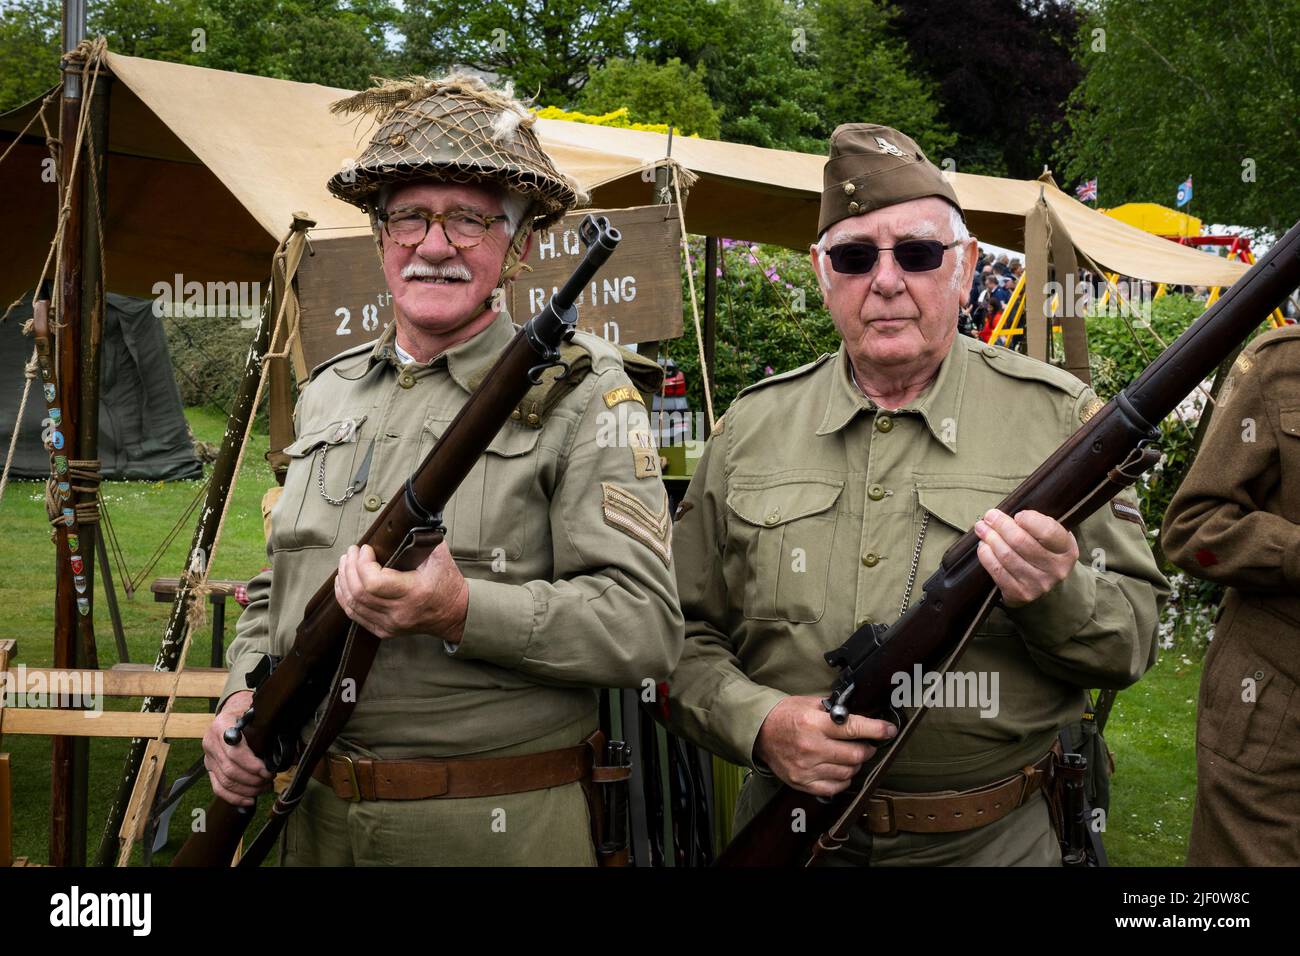 Evento storico vivente di Hworth 1940 (2 uomini in servizio di guardia, vestiti in costume da esercito di Khaki WW2 Dad, accampamento e tenda HQ) - West Yorkshire, Inghilterra Regno Unito. Foto Stock